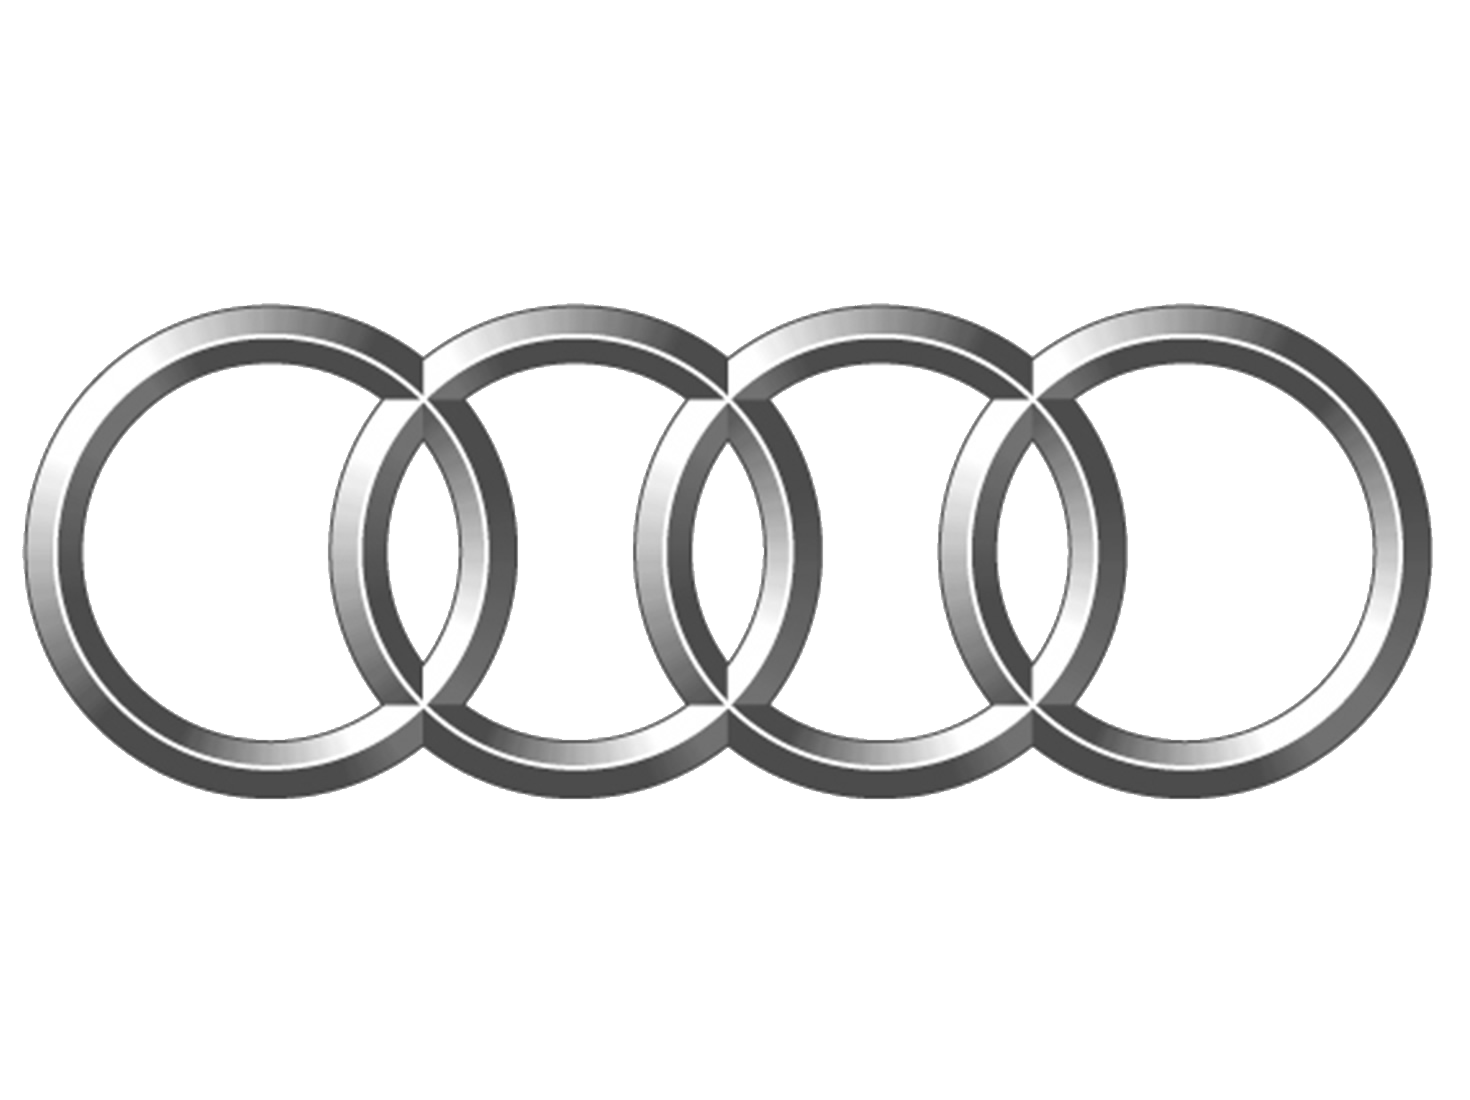 Audi announces top-level management rejig in India